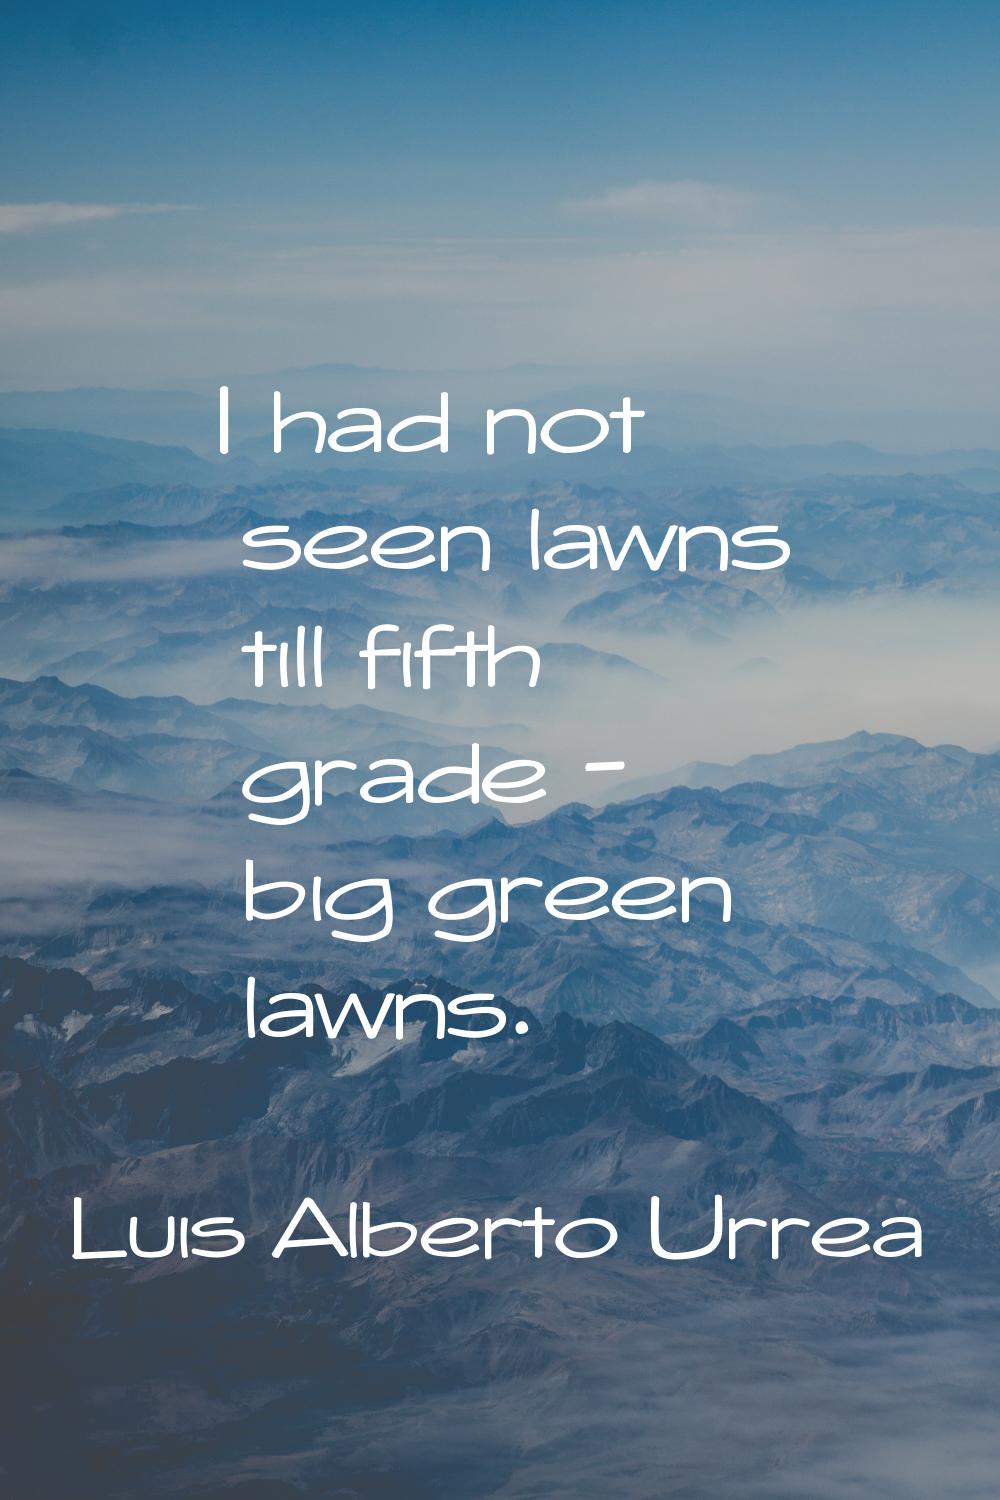 I had not seen lawns till fifth grade - big green lawns.